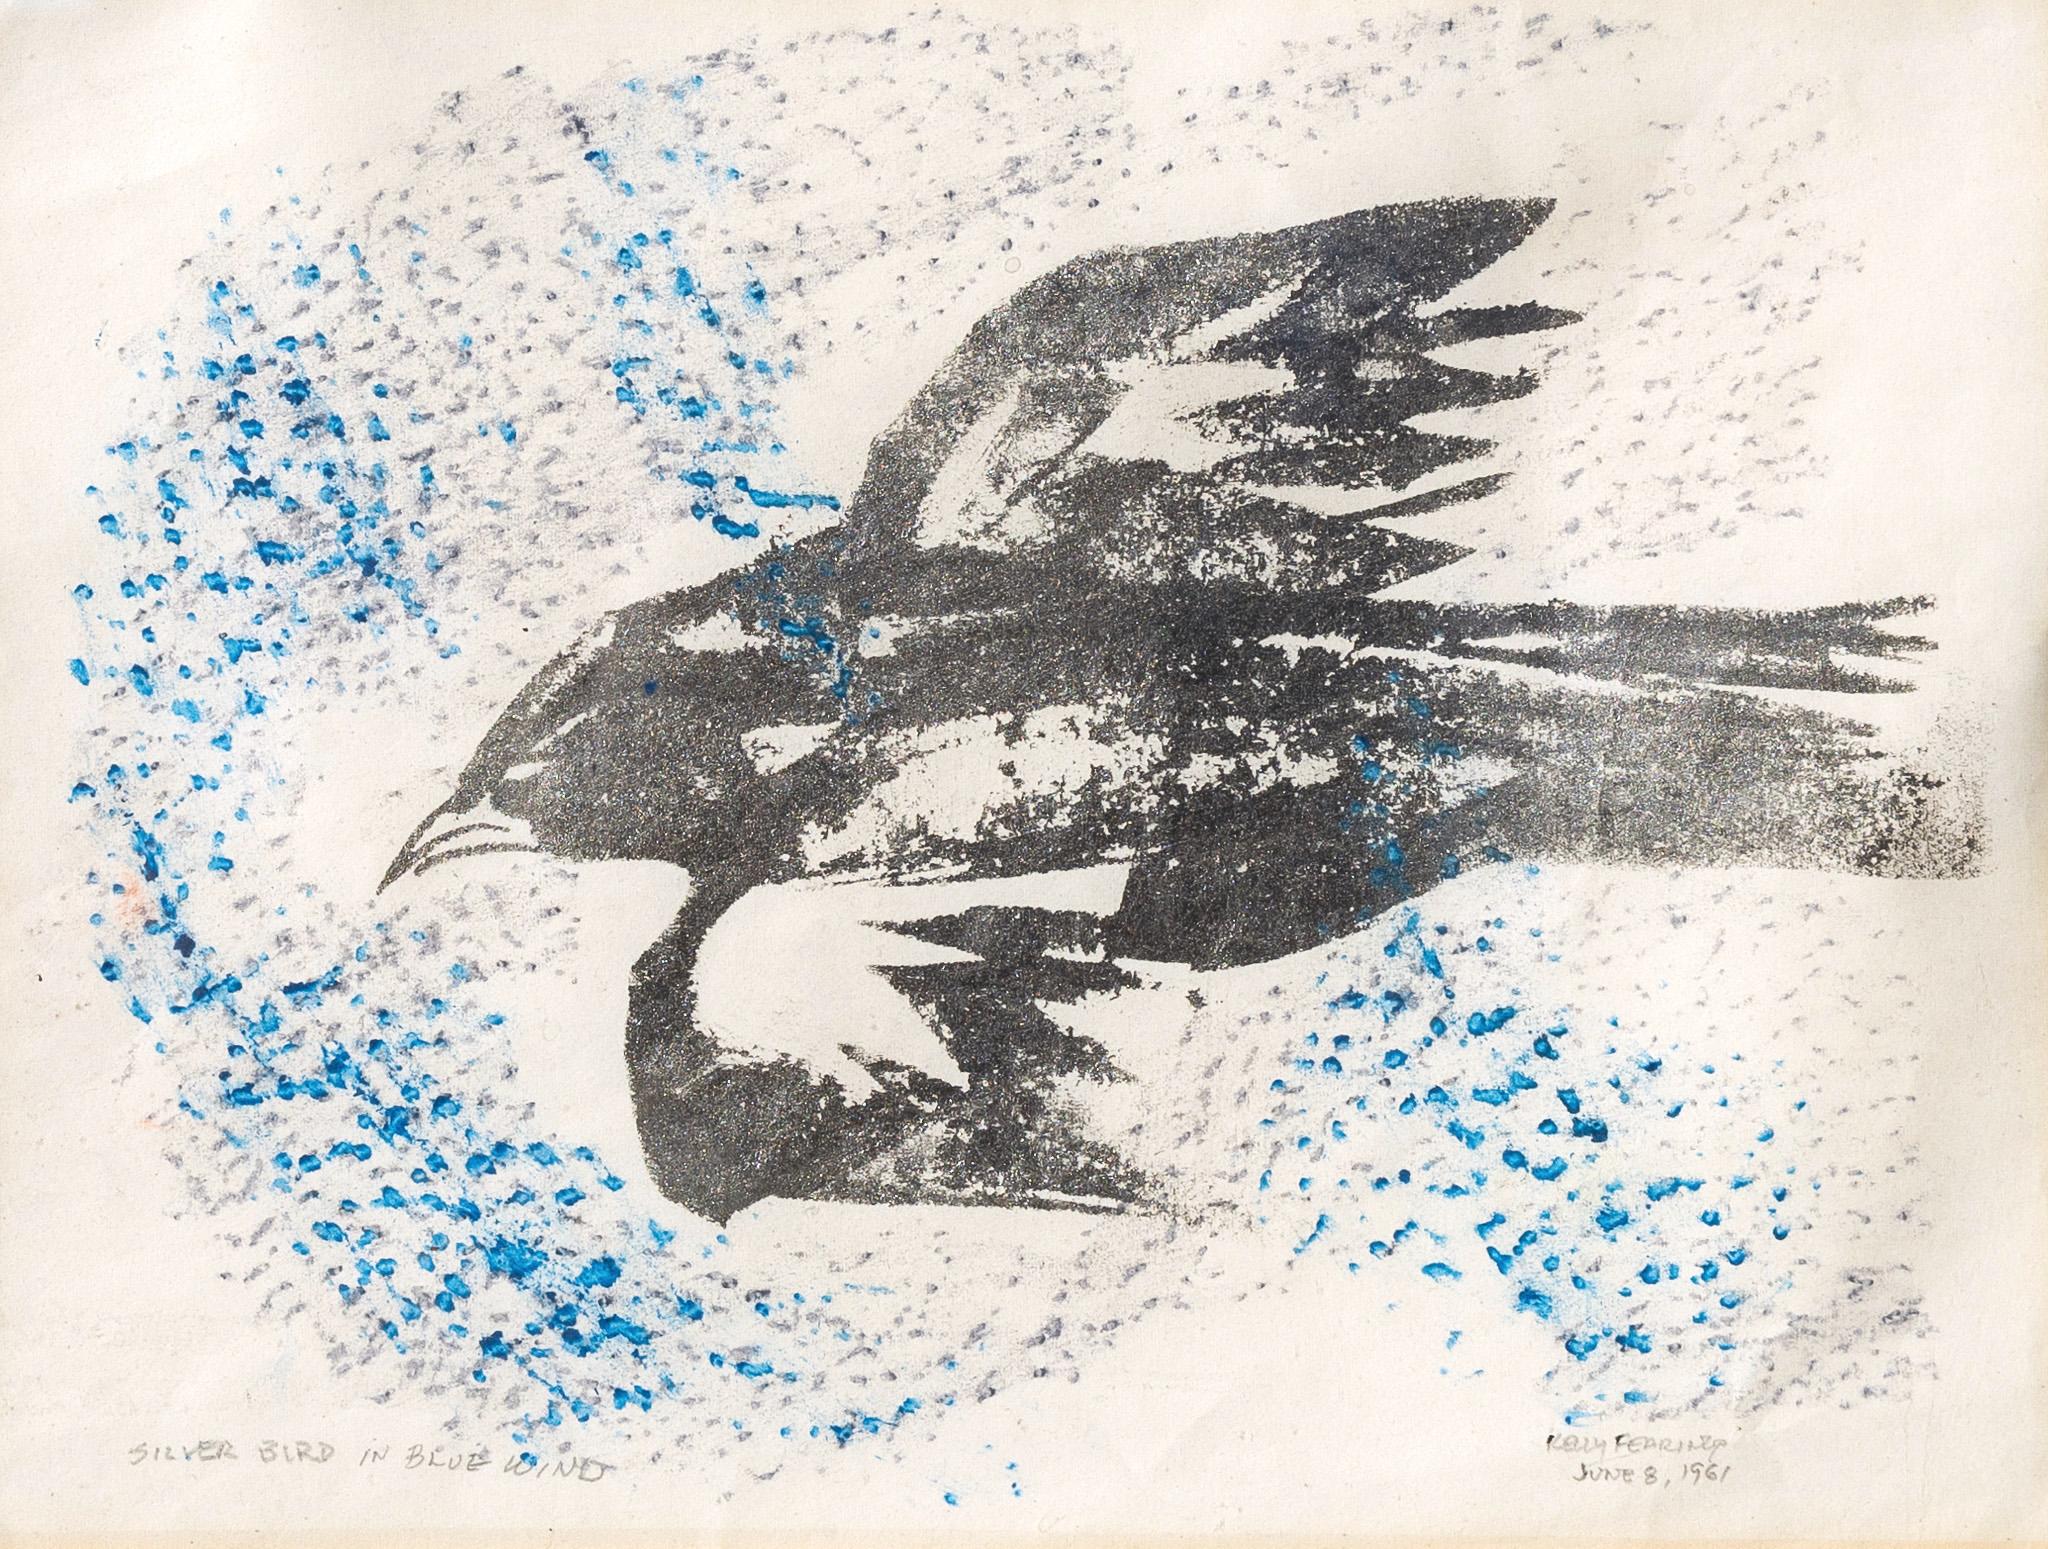 Silver Bird in Blue Wind - Mixed Media Art by Kelly Fearing